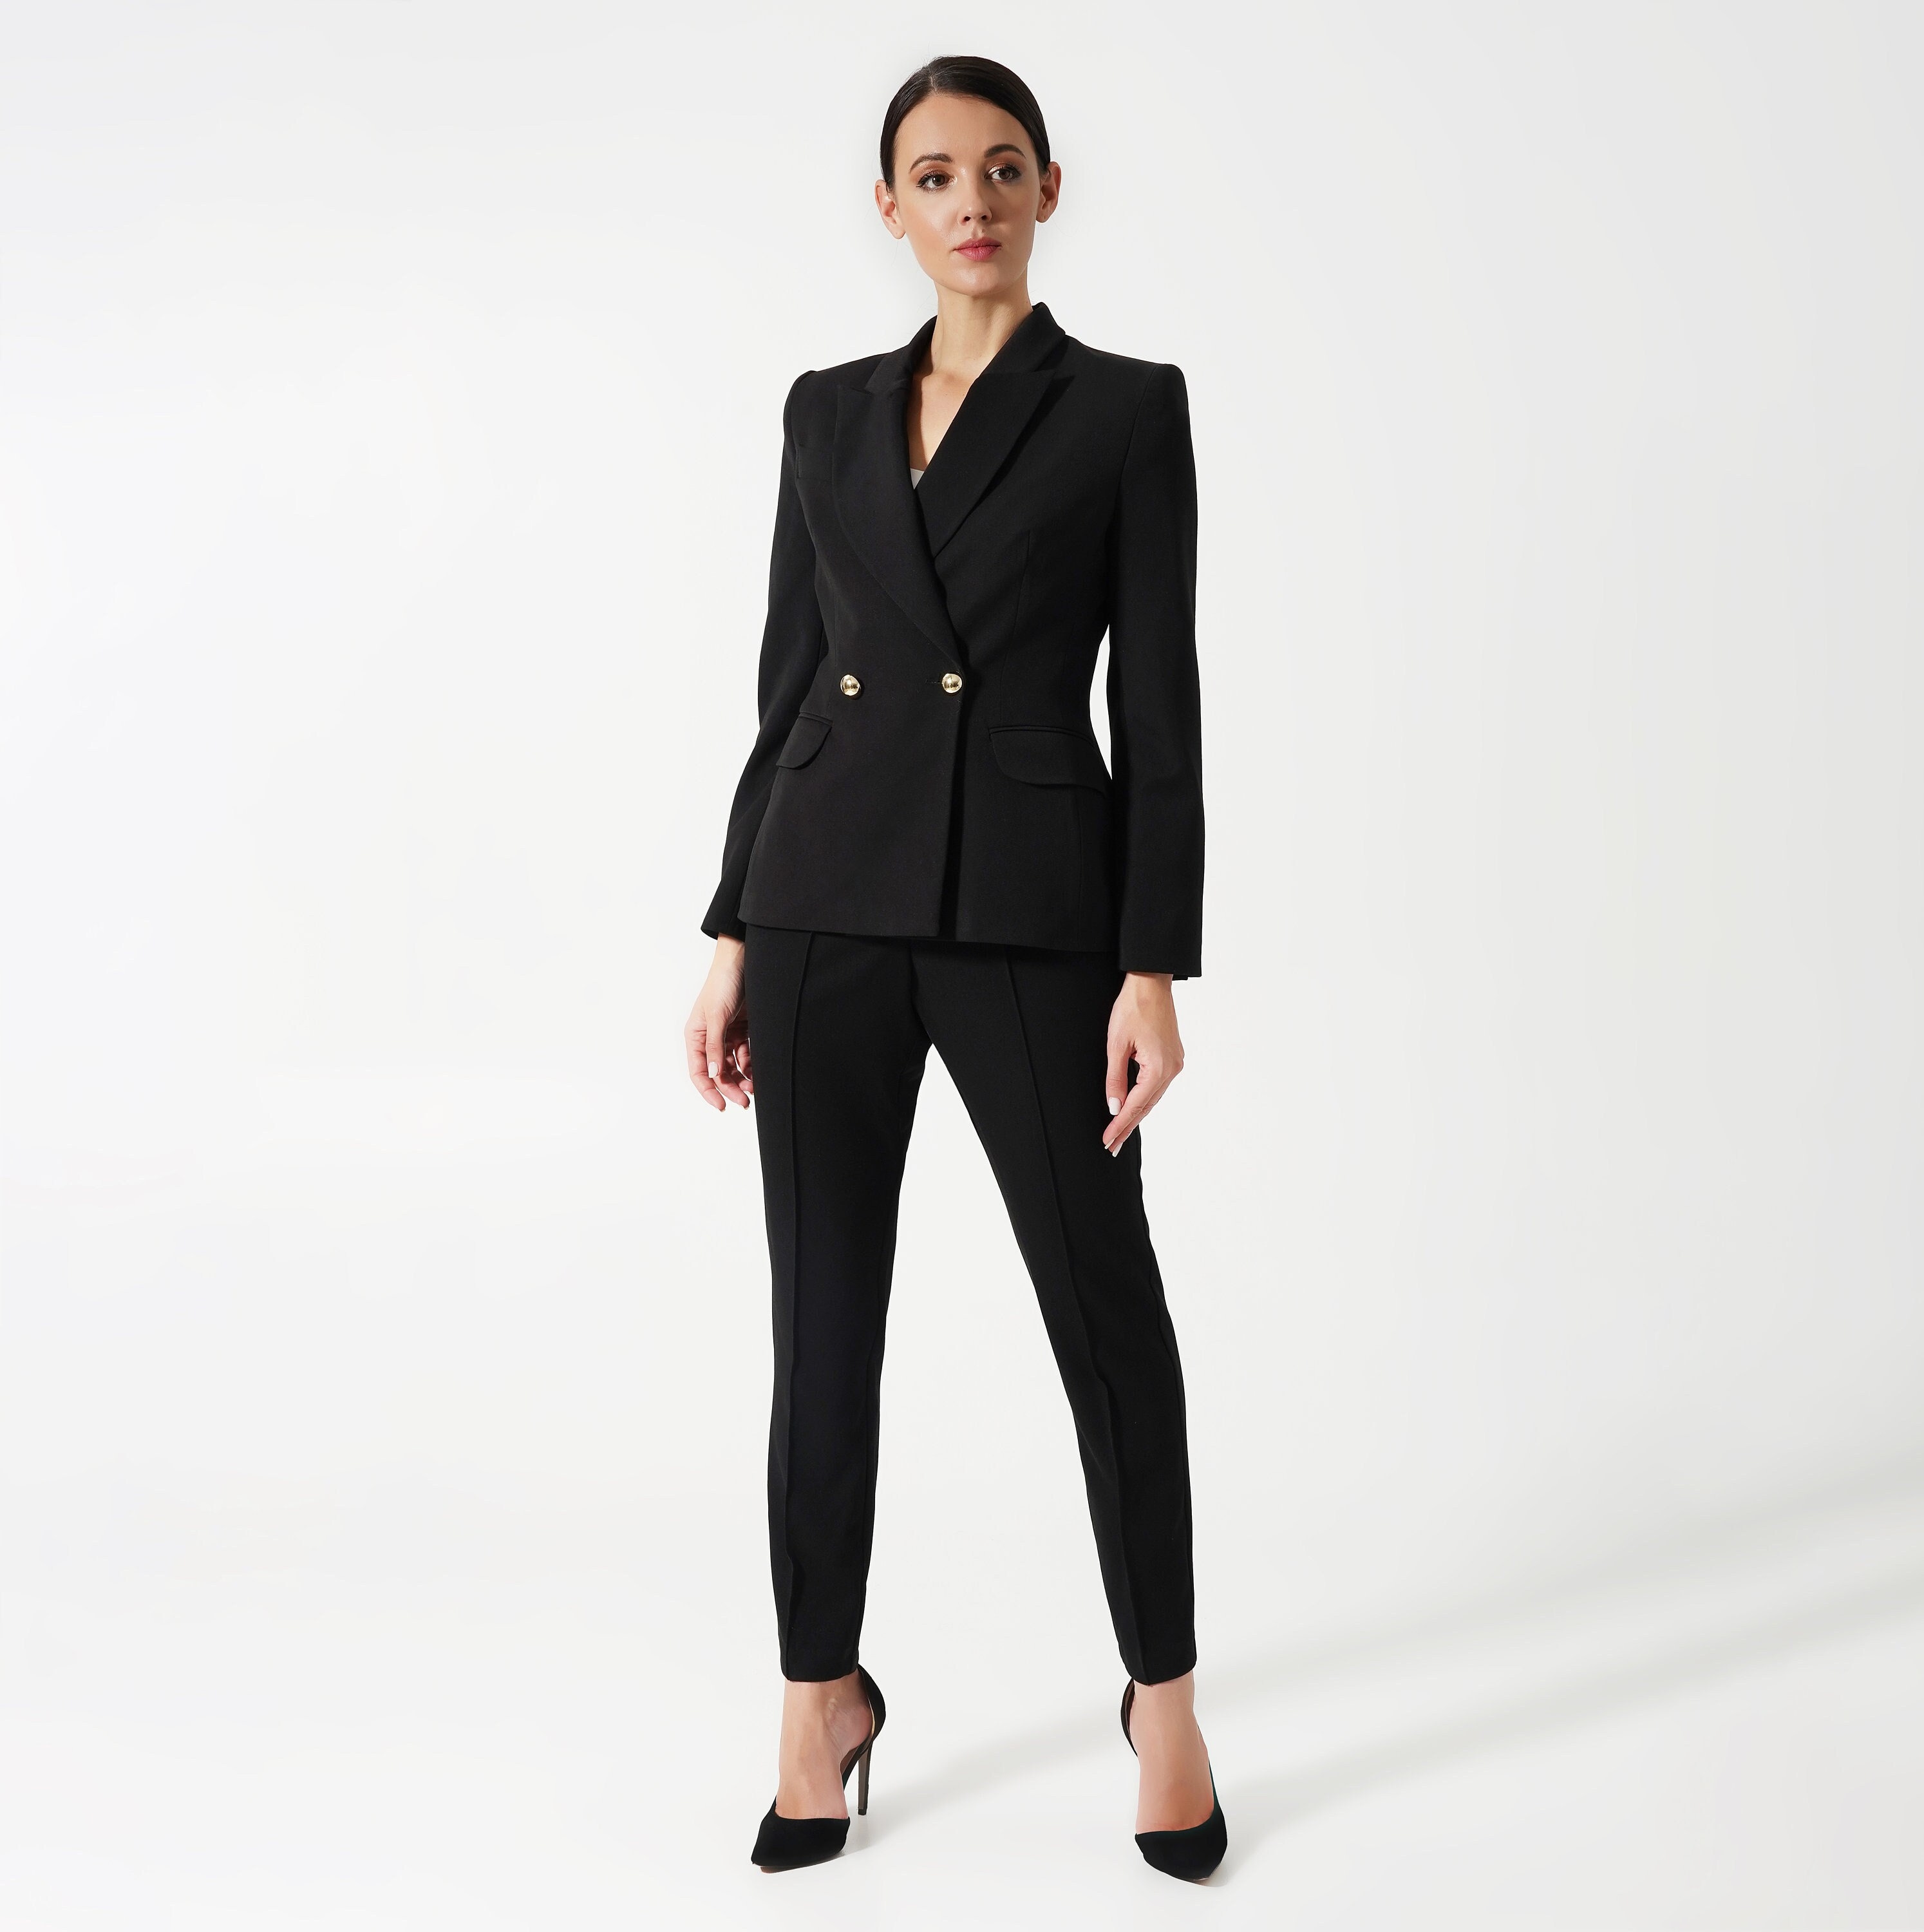 Black Pant Suit Women, Black Business Suit for Ladies, Classic